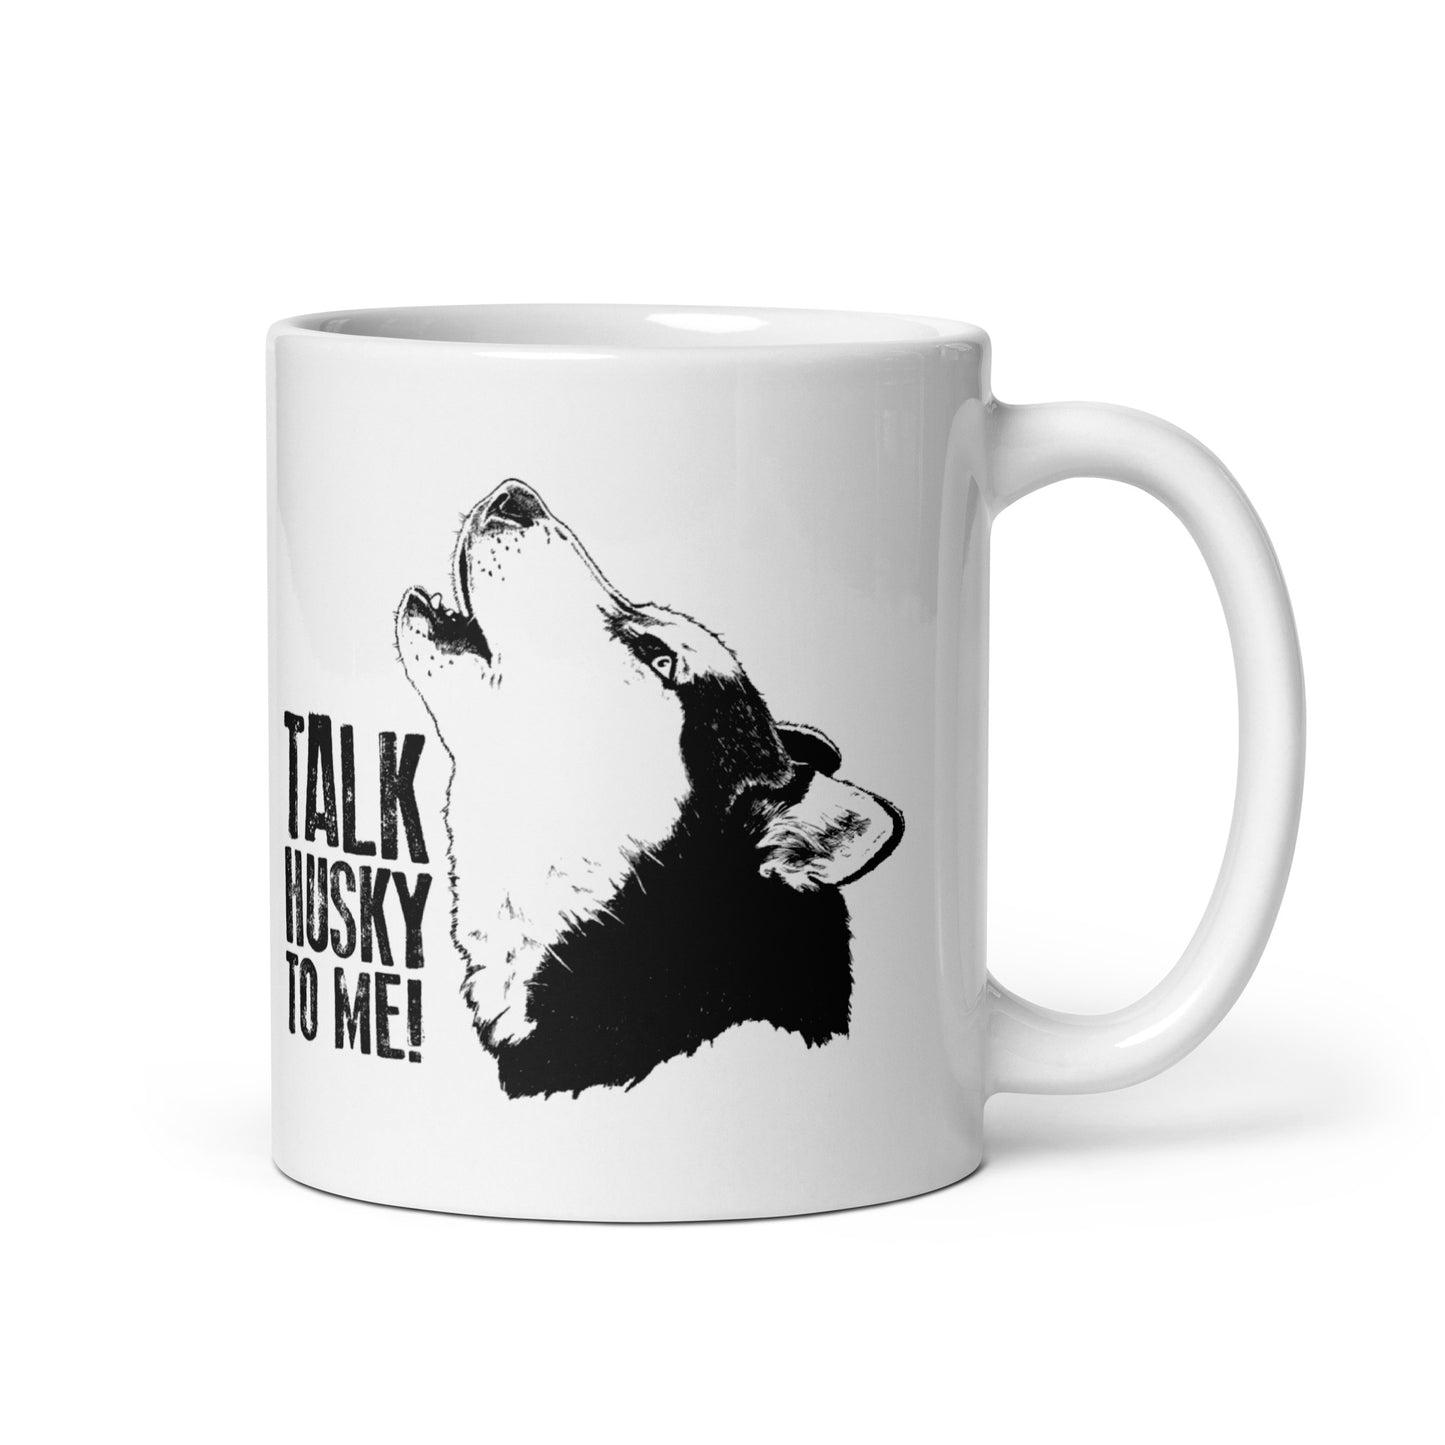 Talk Husky to Me! - Siberian Husky Mug - Coffee Mug